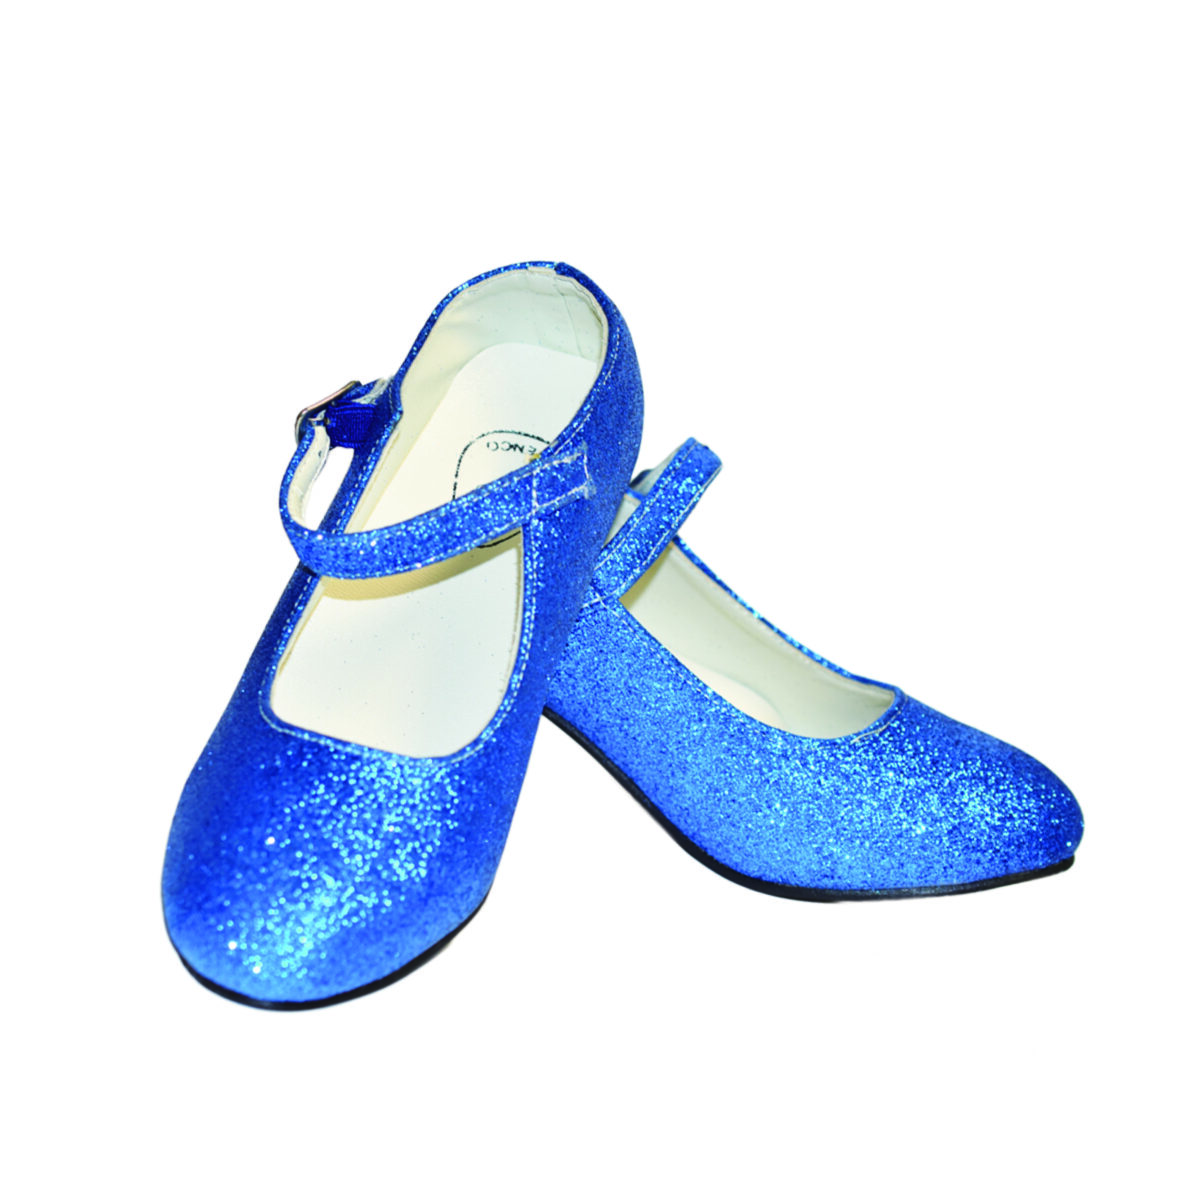 Zapatos Princesa Azul con Purpurina